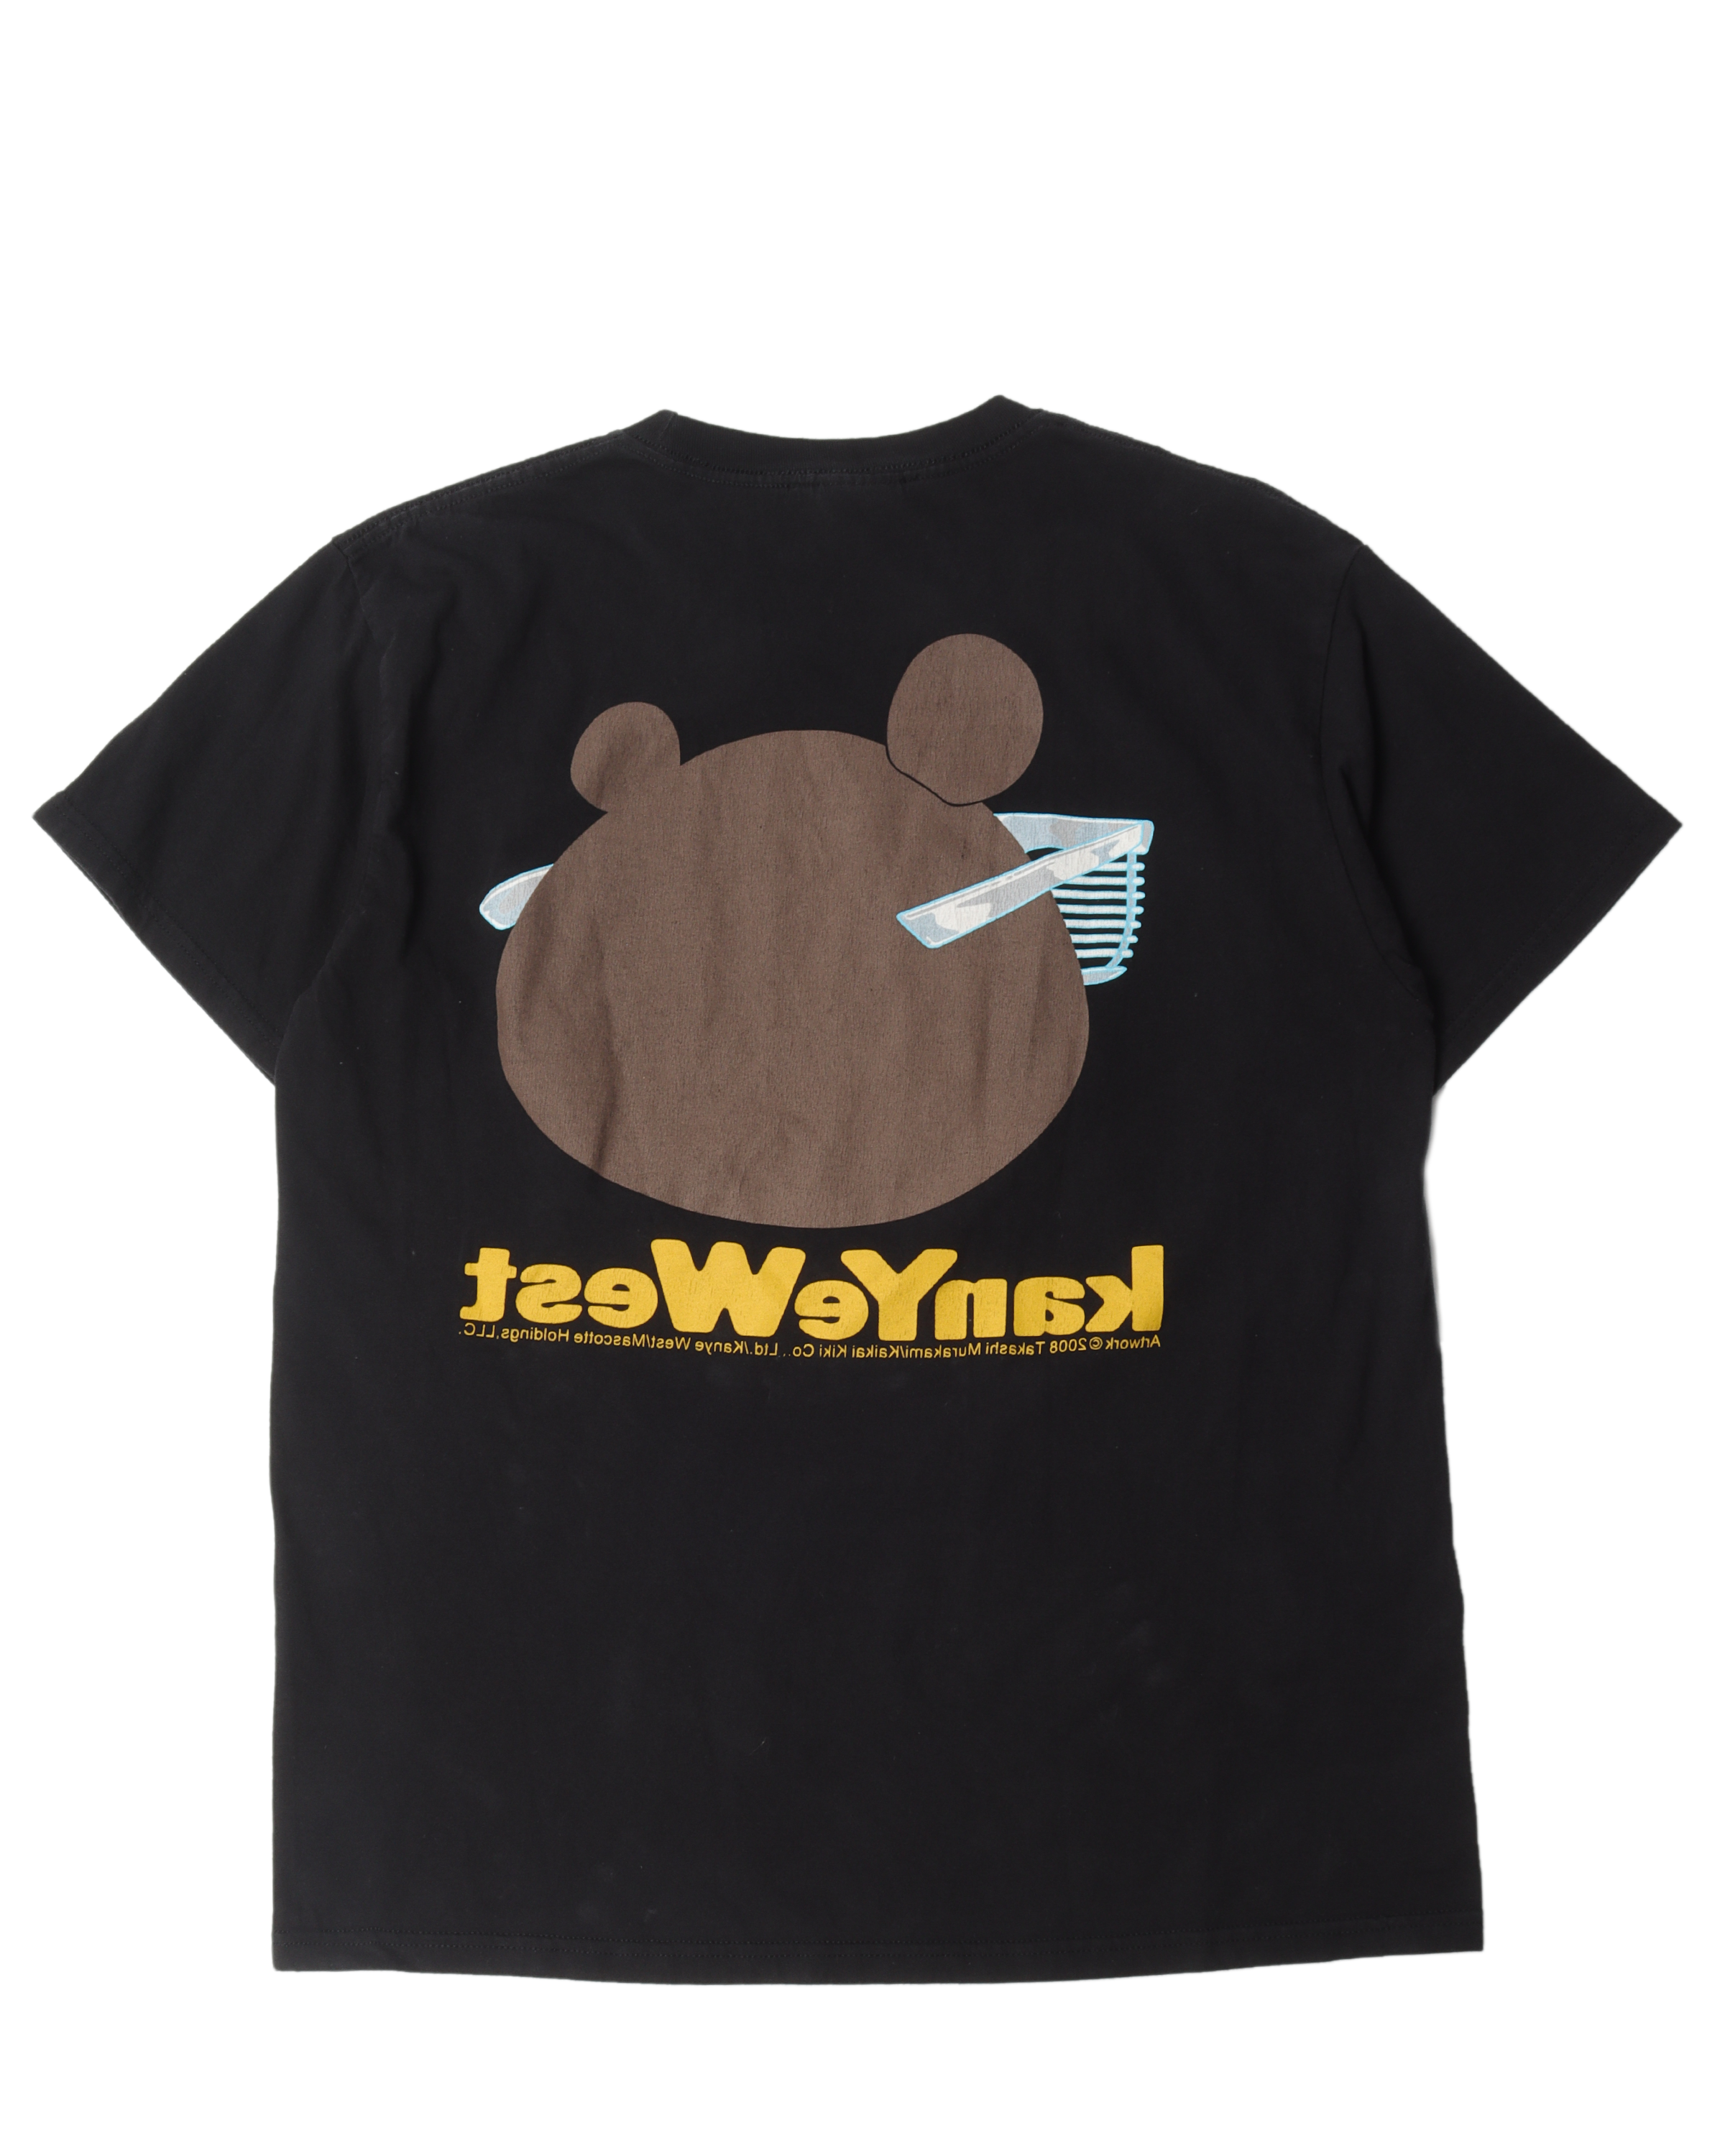 Kanye West x Takashi Murakami T-Shirt